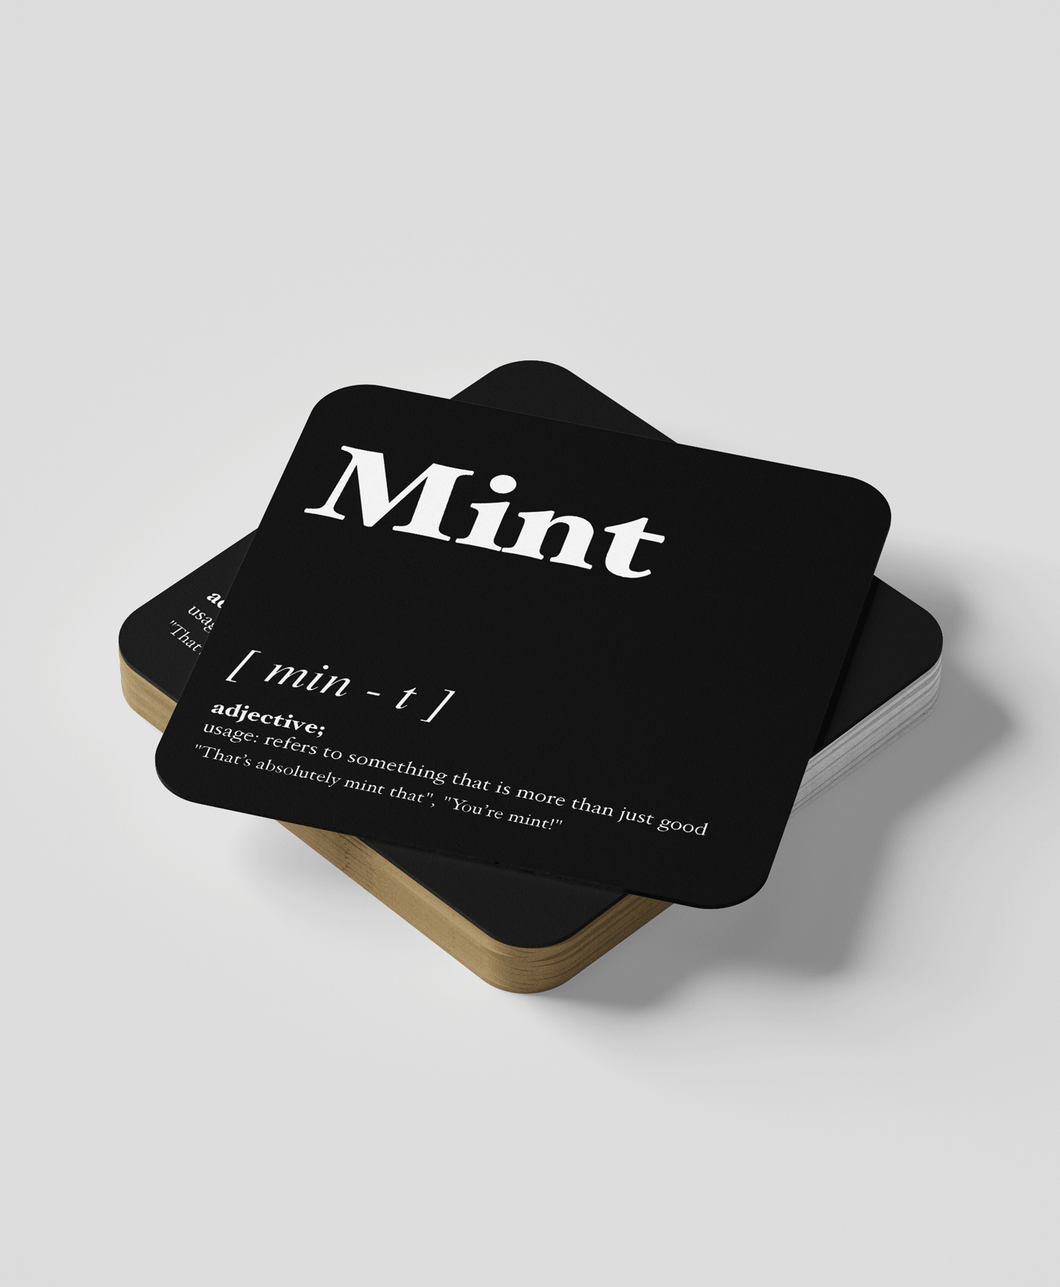 Mint - Geordie Dialect Coaster (Black)